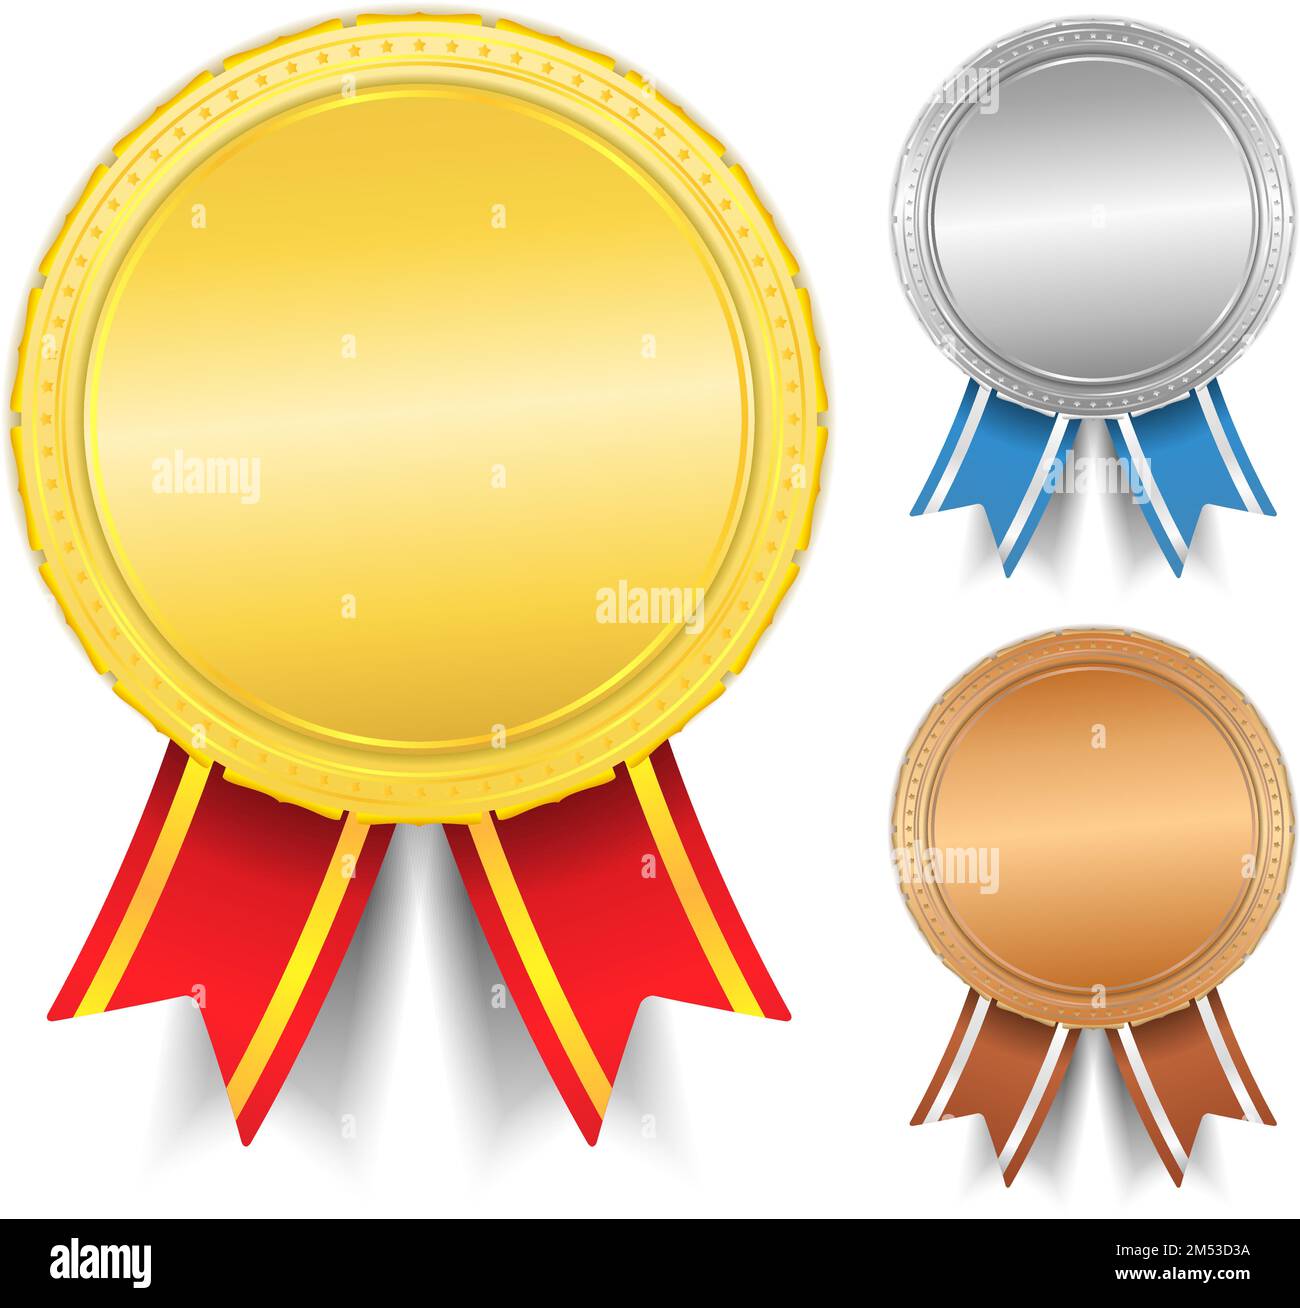 Goldene, silberne und bronzene Medaillen, eps10 Vektorgrafik Stock Vektor